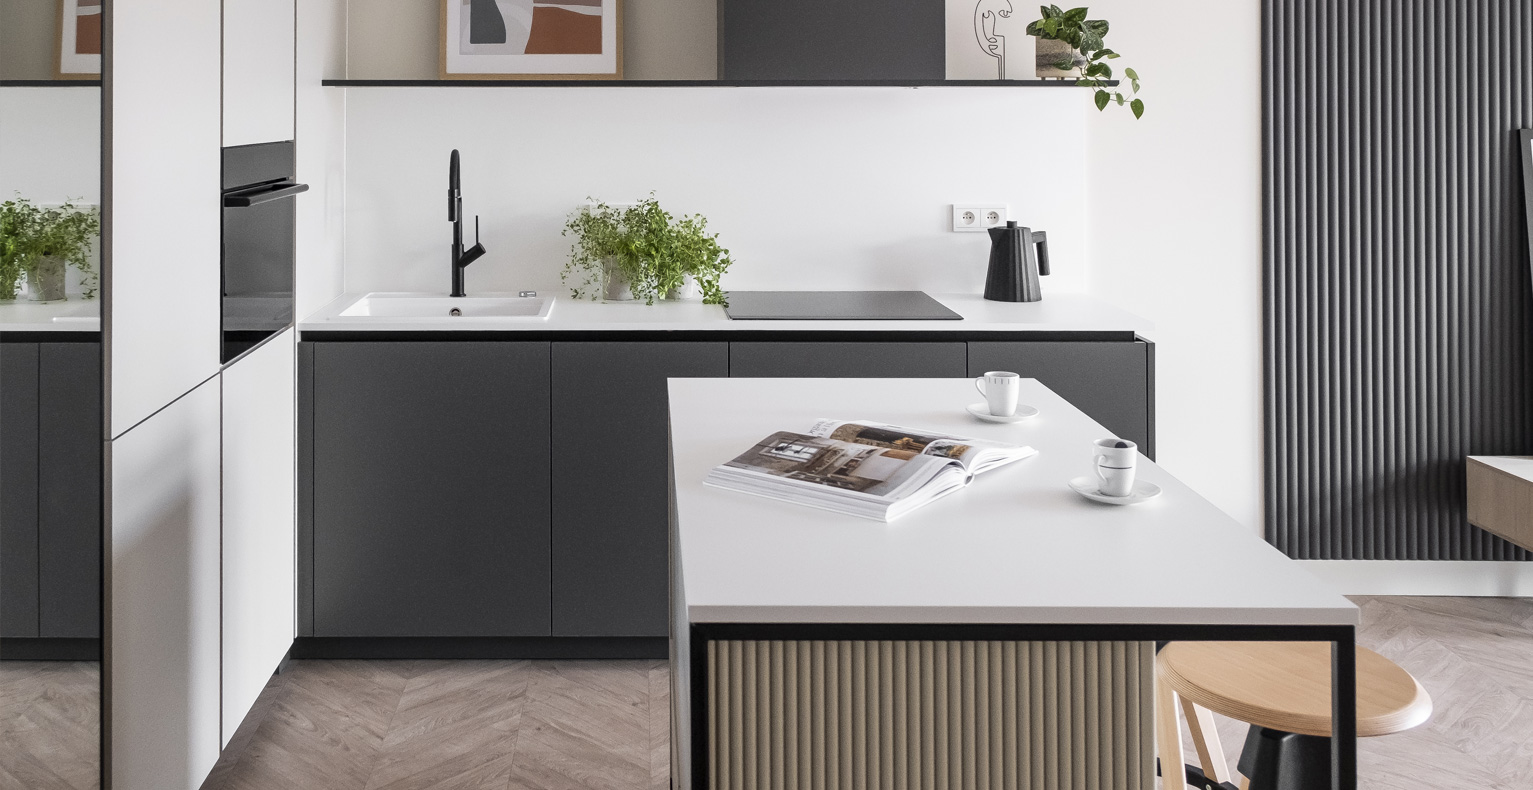 carousel-1-minimalistyczna kuchnia-nowoczesna kuchnia-czarna bateria kuchenna-moba furniture- projekt golaska studio architektoniczne - mieszkanie do wynajecia zielona gora